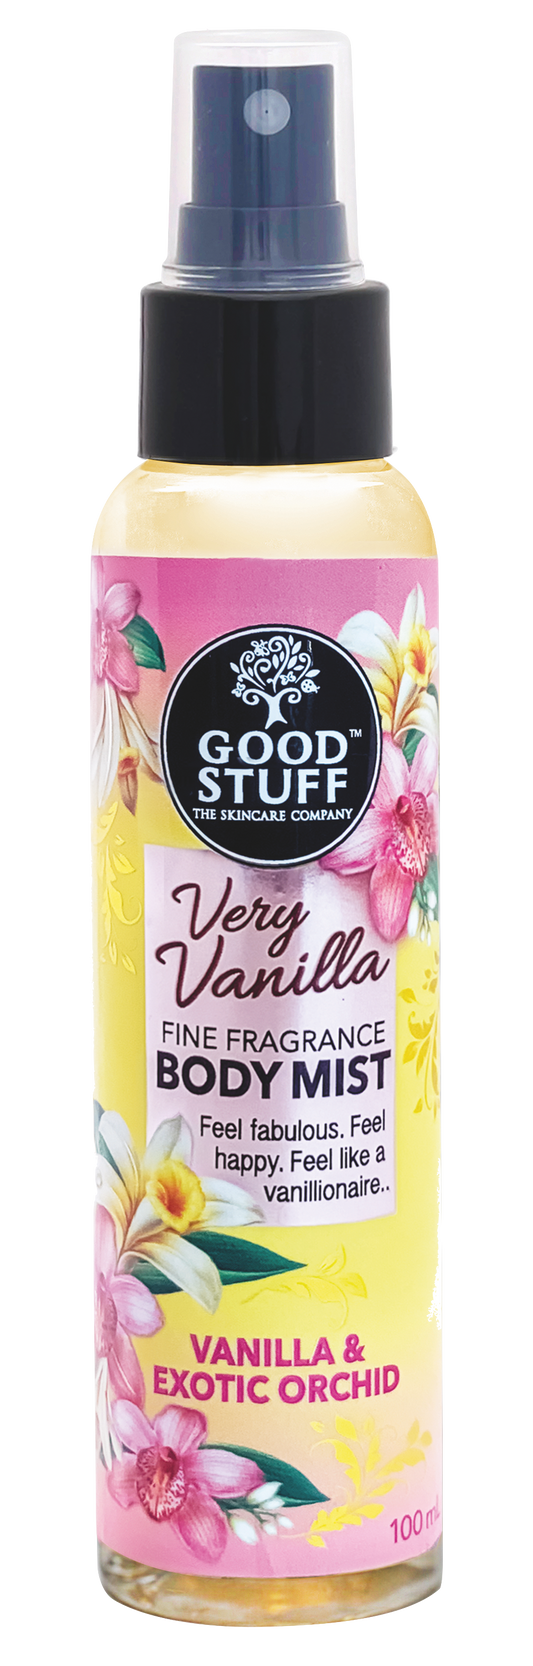 Body Mist - Good Stuff Very Vanilla